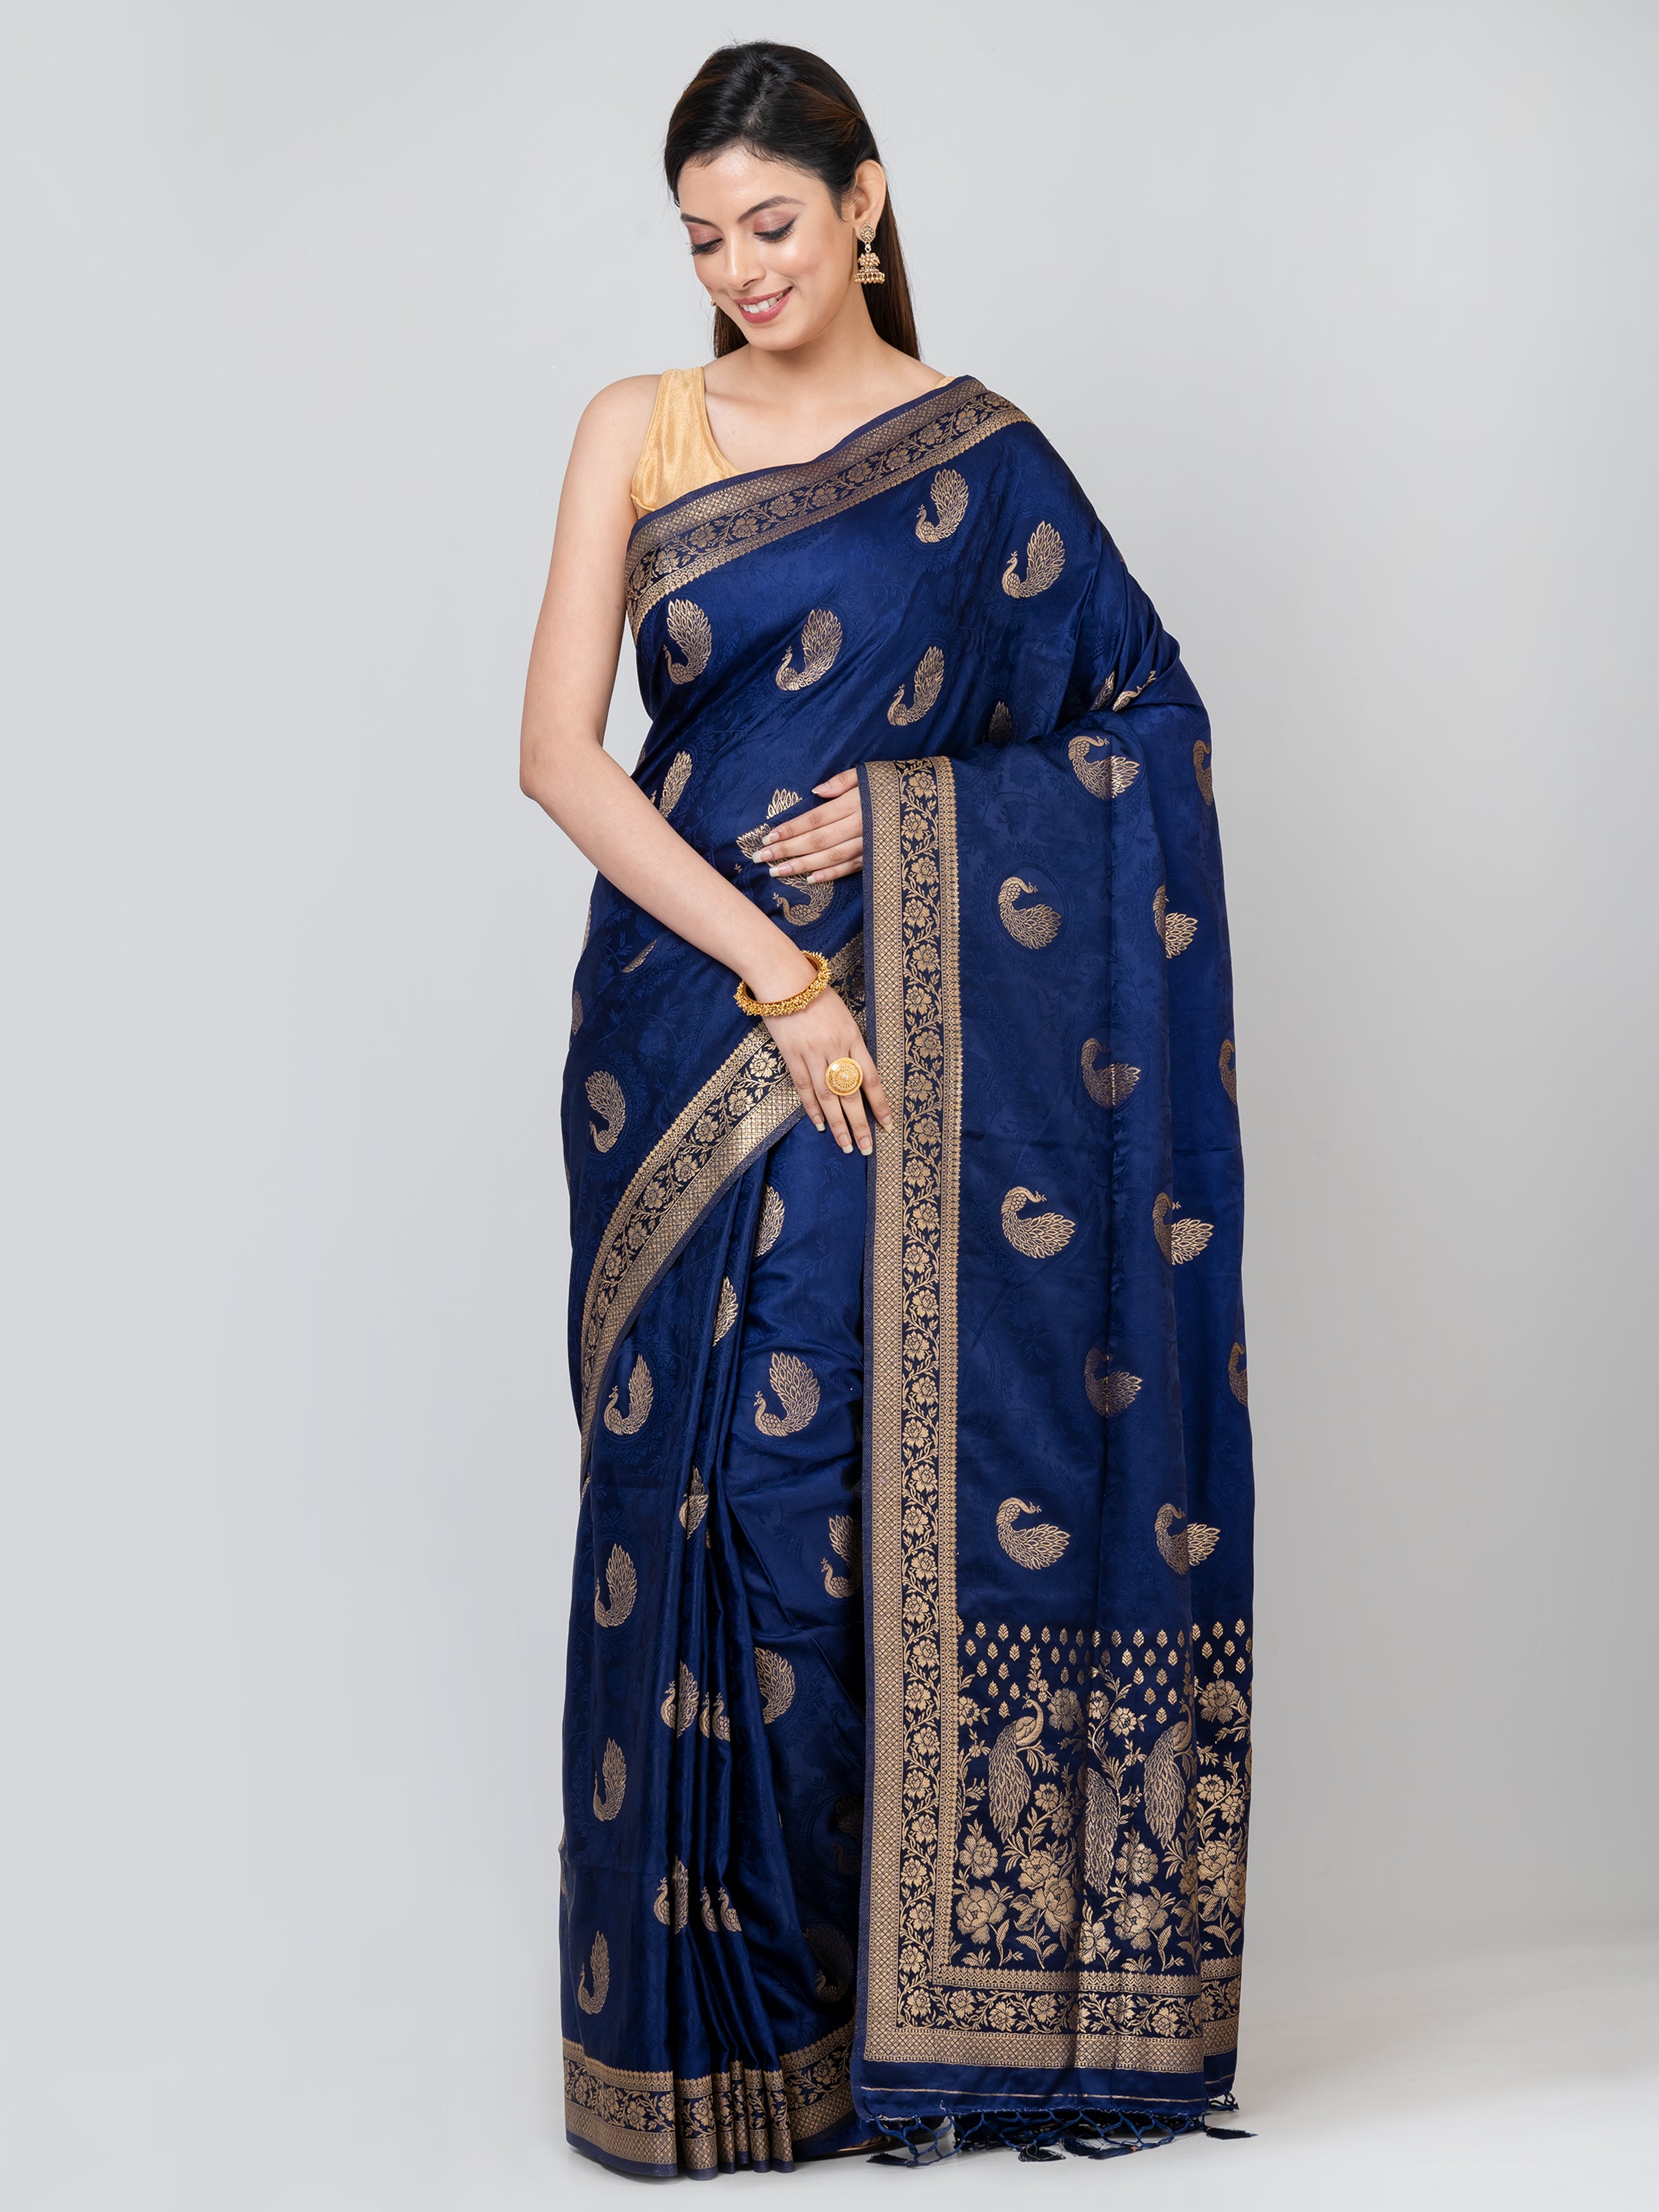 Kavya Soft & Lightweight Indigo Blue Satin Gajji Silk Weaving Saree - KAVVYA 